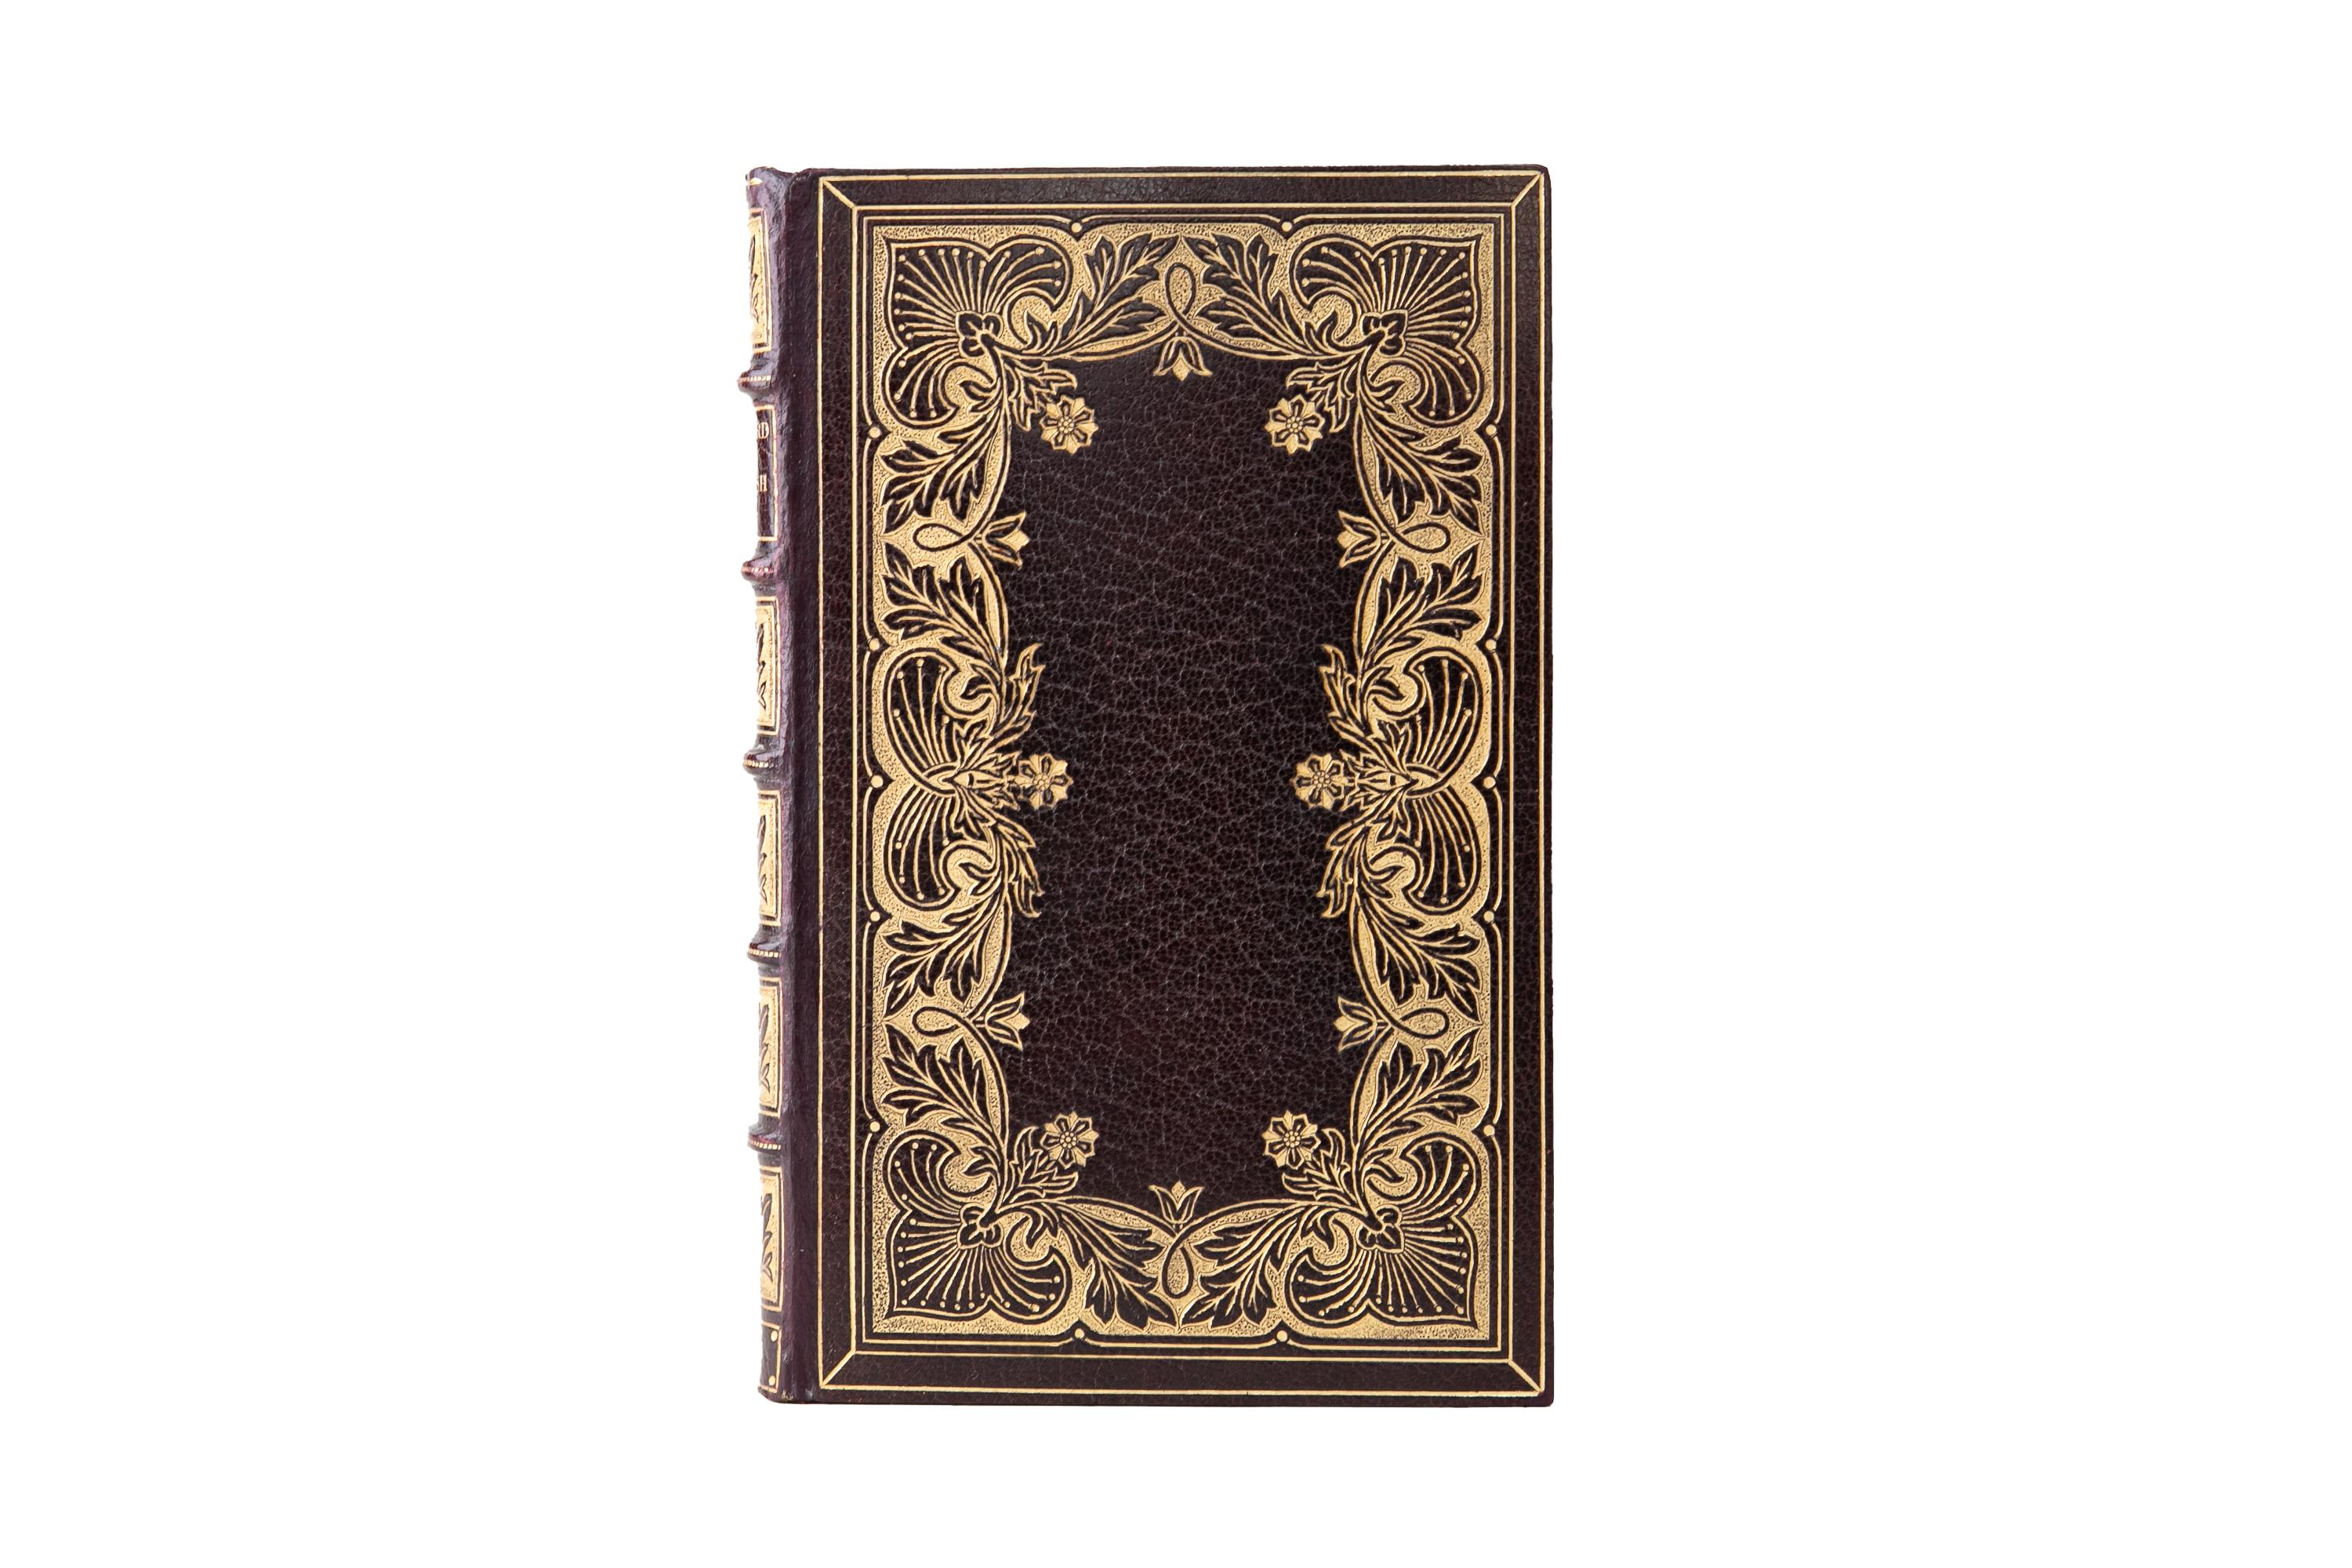 1 Volume. Sir Arthur Quiller-Couch, The Oxford Book of English Verse. Reliure de Riviere en plein Maroc brun, avec les couvertures et les dos à nerfs dorés. Toutes les tranches sont dorées avec des dentelles dorées. Vers anglais de 1250 à 1900.